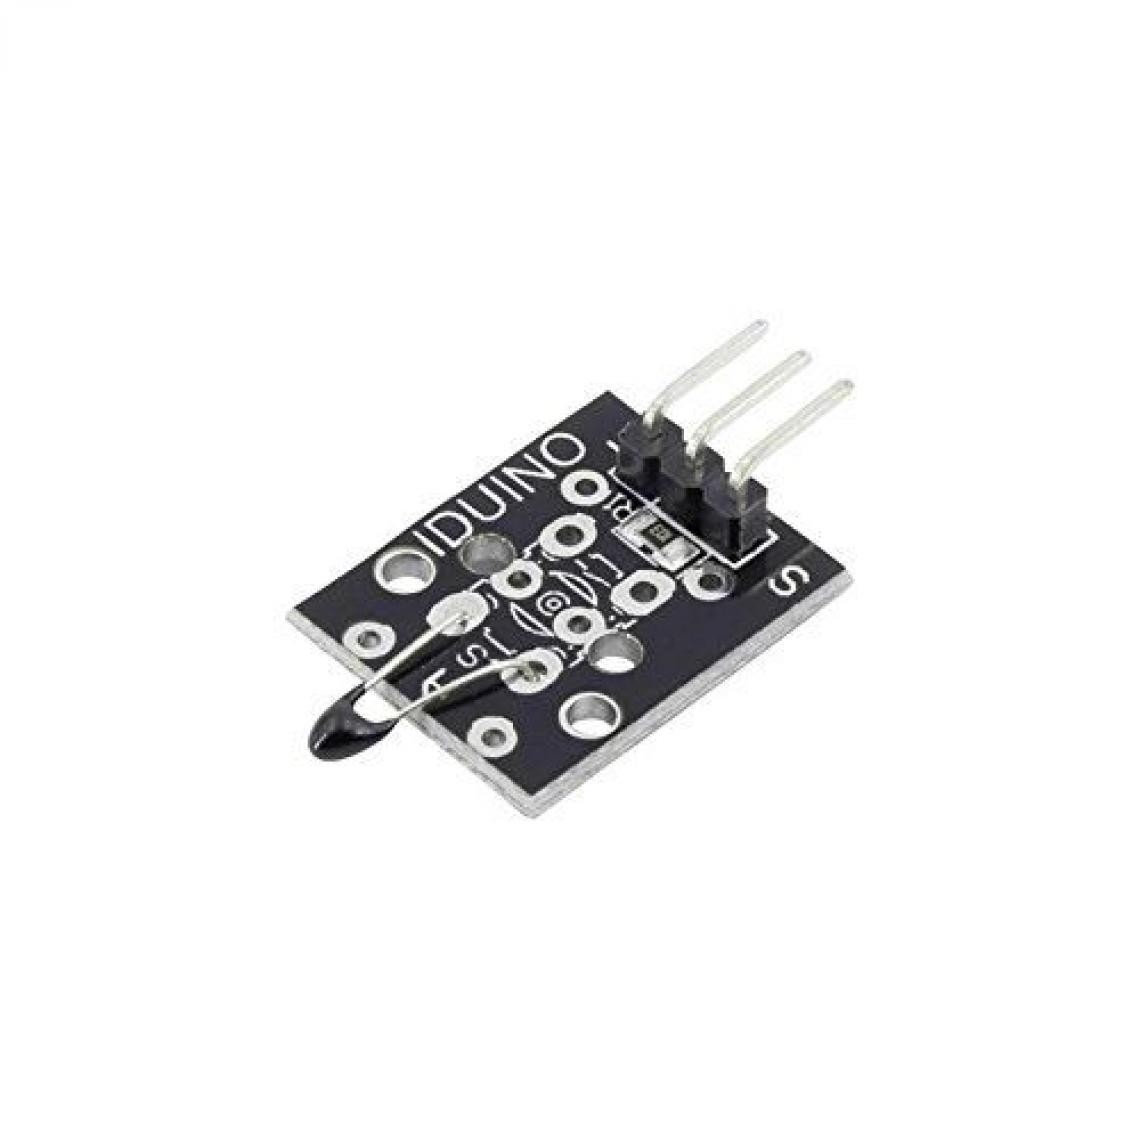 Inconnu - Module capteur de température Iduino 1485330 -55 à +125 °C 1 pc(s) - Autres équipements modulaires